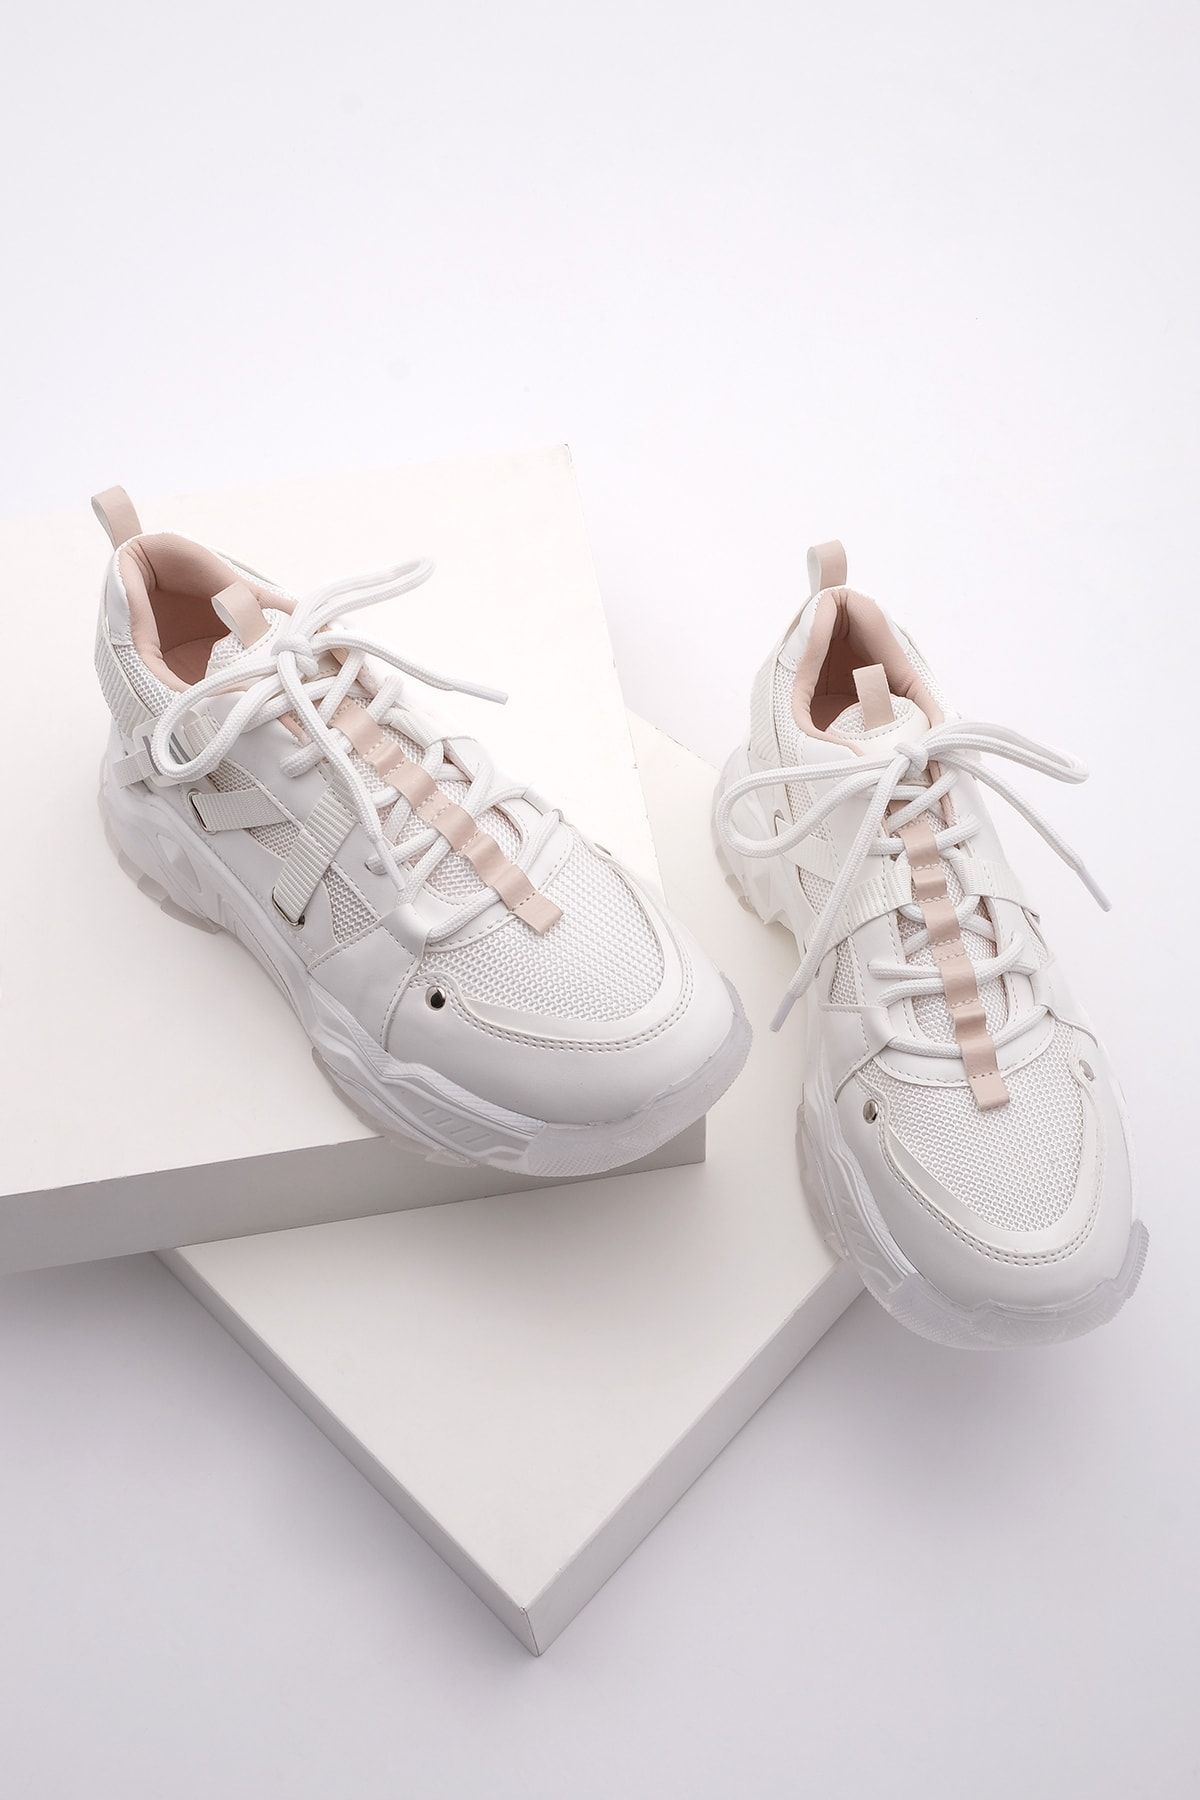 Marjin Kadın Yüksek Şeffaf Taban Sneaker Bağcıklı Spor Ayakkabı Ojis beyaz